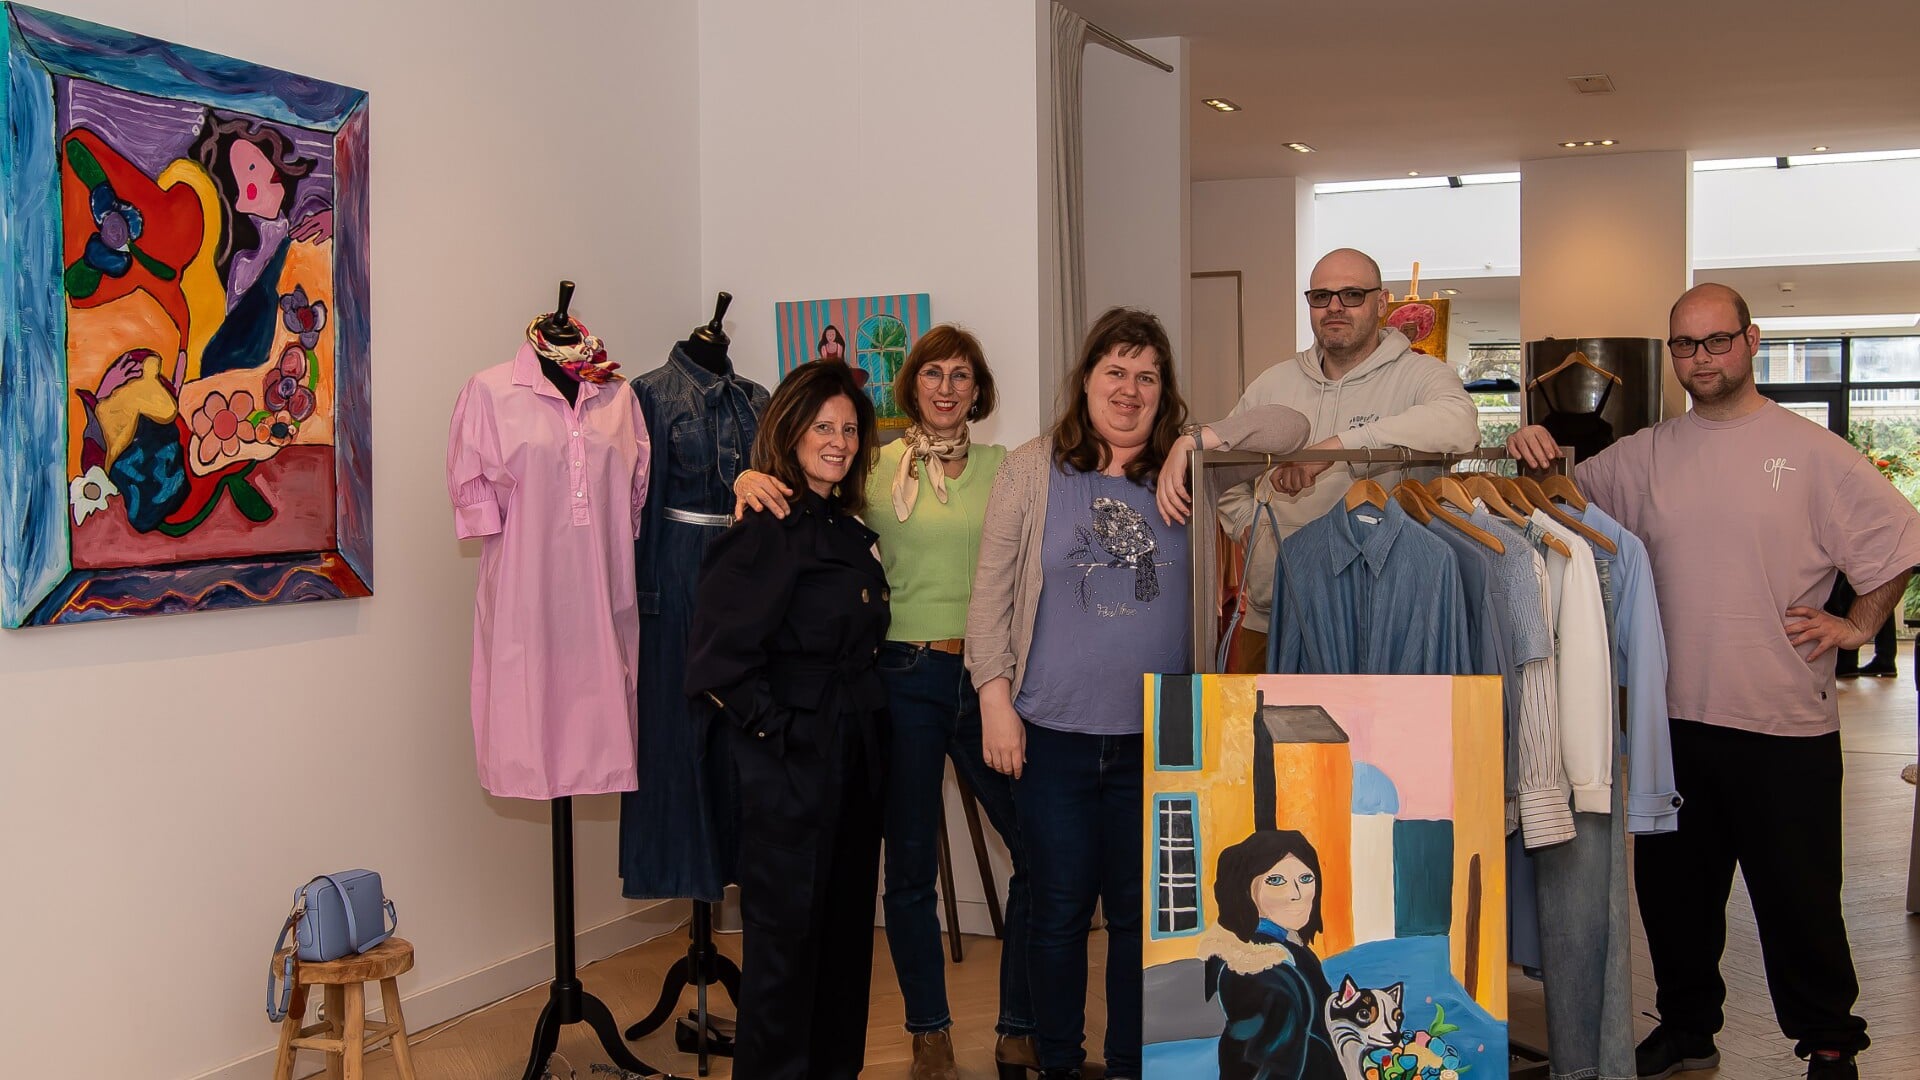 Kleurrijke mode en dito kunst gaan samen bij HERMEE. Van links naar rechts: Peggy van der Heijden, Anneke Goede (organisator van de expositie), Stéphanie, begeleider Raymond Huizinga en Kevin. 